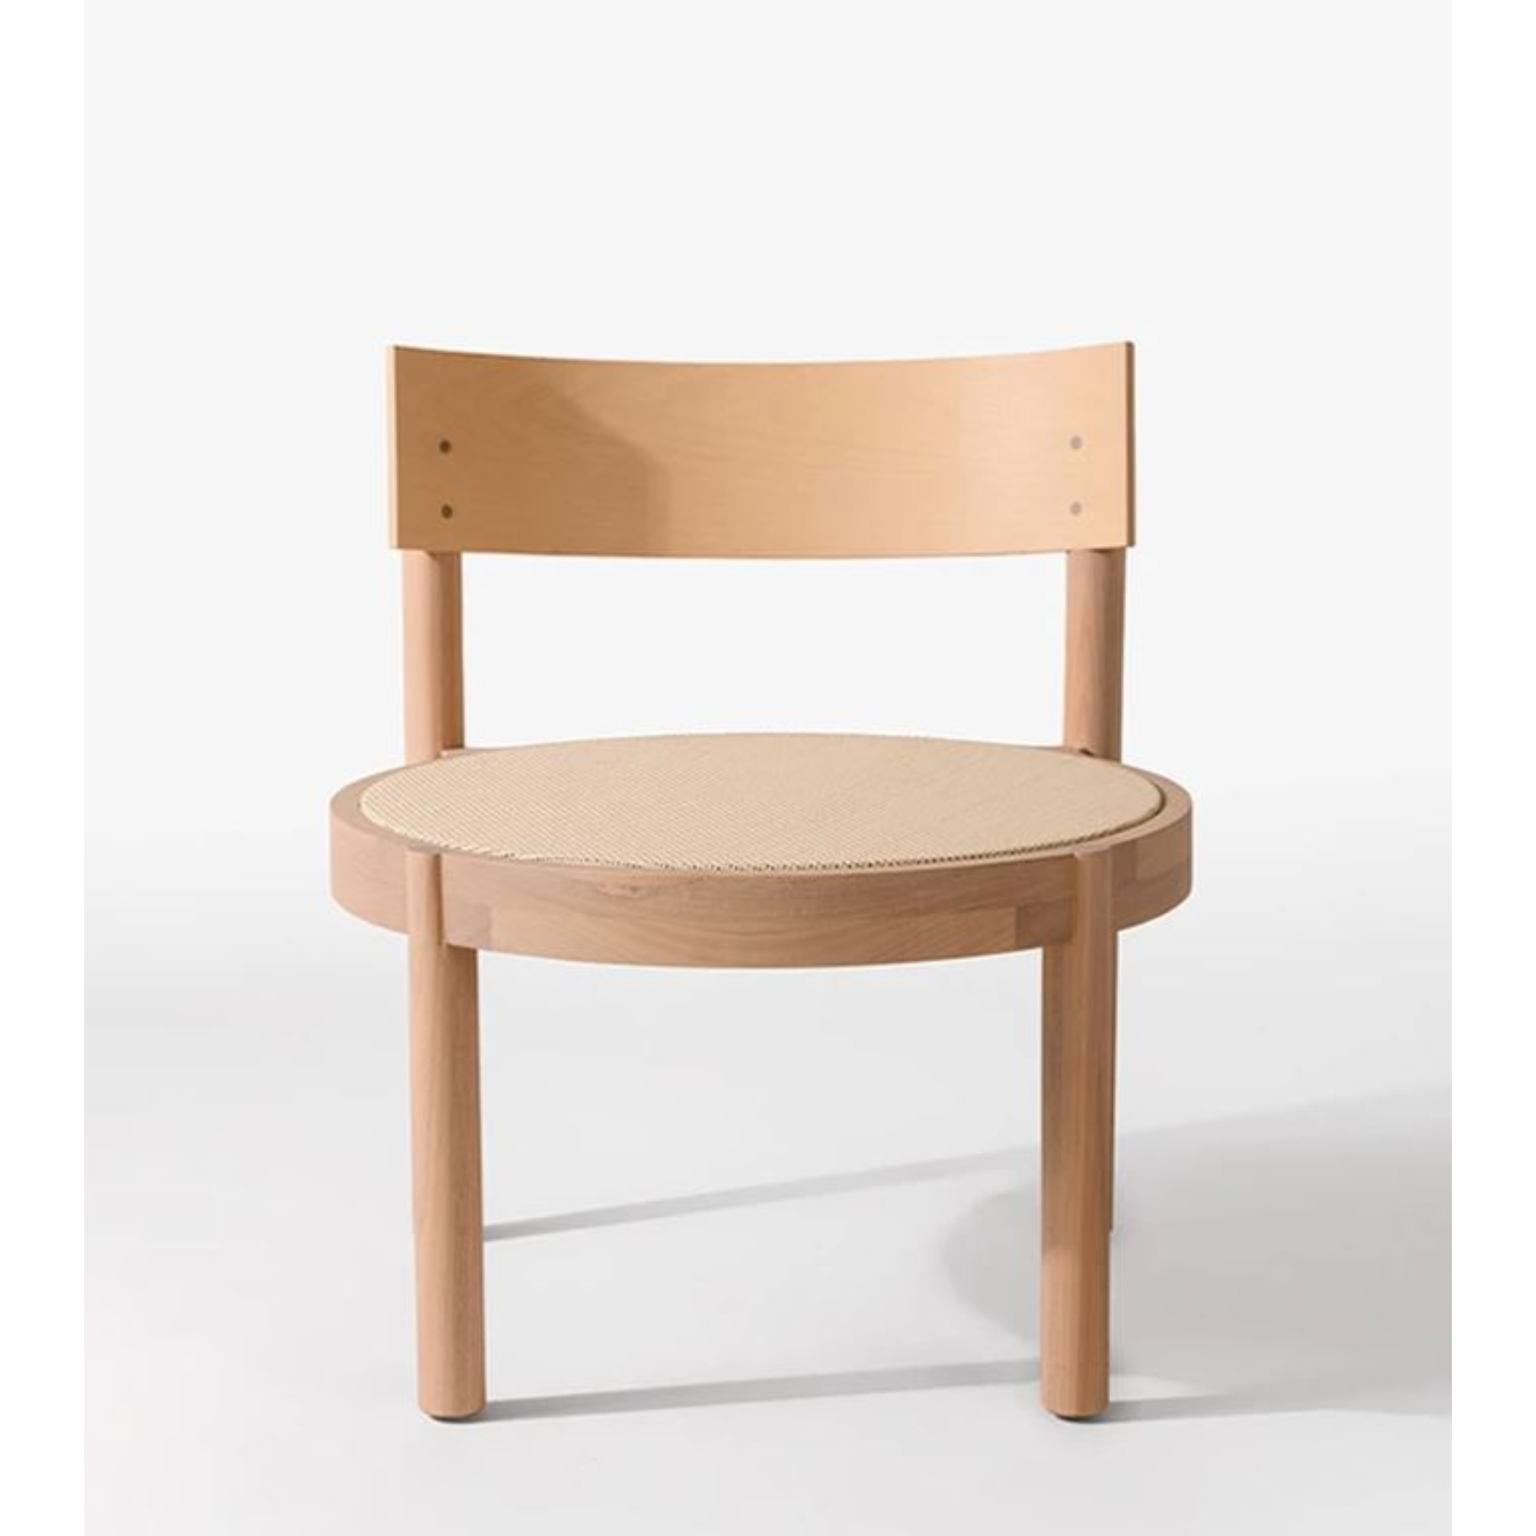 Gebleichtes Tauari Gravatá Sessel von Wentz
Abmessungen: T 64 x B 60 x H 67 cm
MATERIALIEN: Tauari-Holz, Rohr/Polsterung.
Gewicht: 6,6kg / 14,5 lbs

Die Gravatá-Serie ist eine Synthese unserer Vision von funktionaler und visueller Einfachheit der